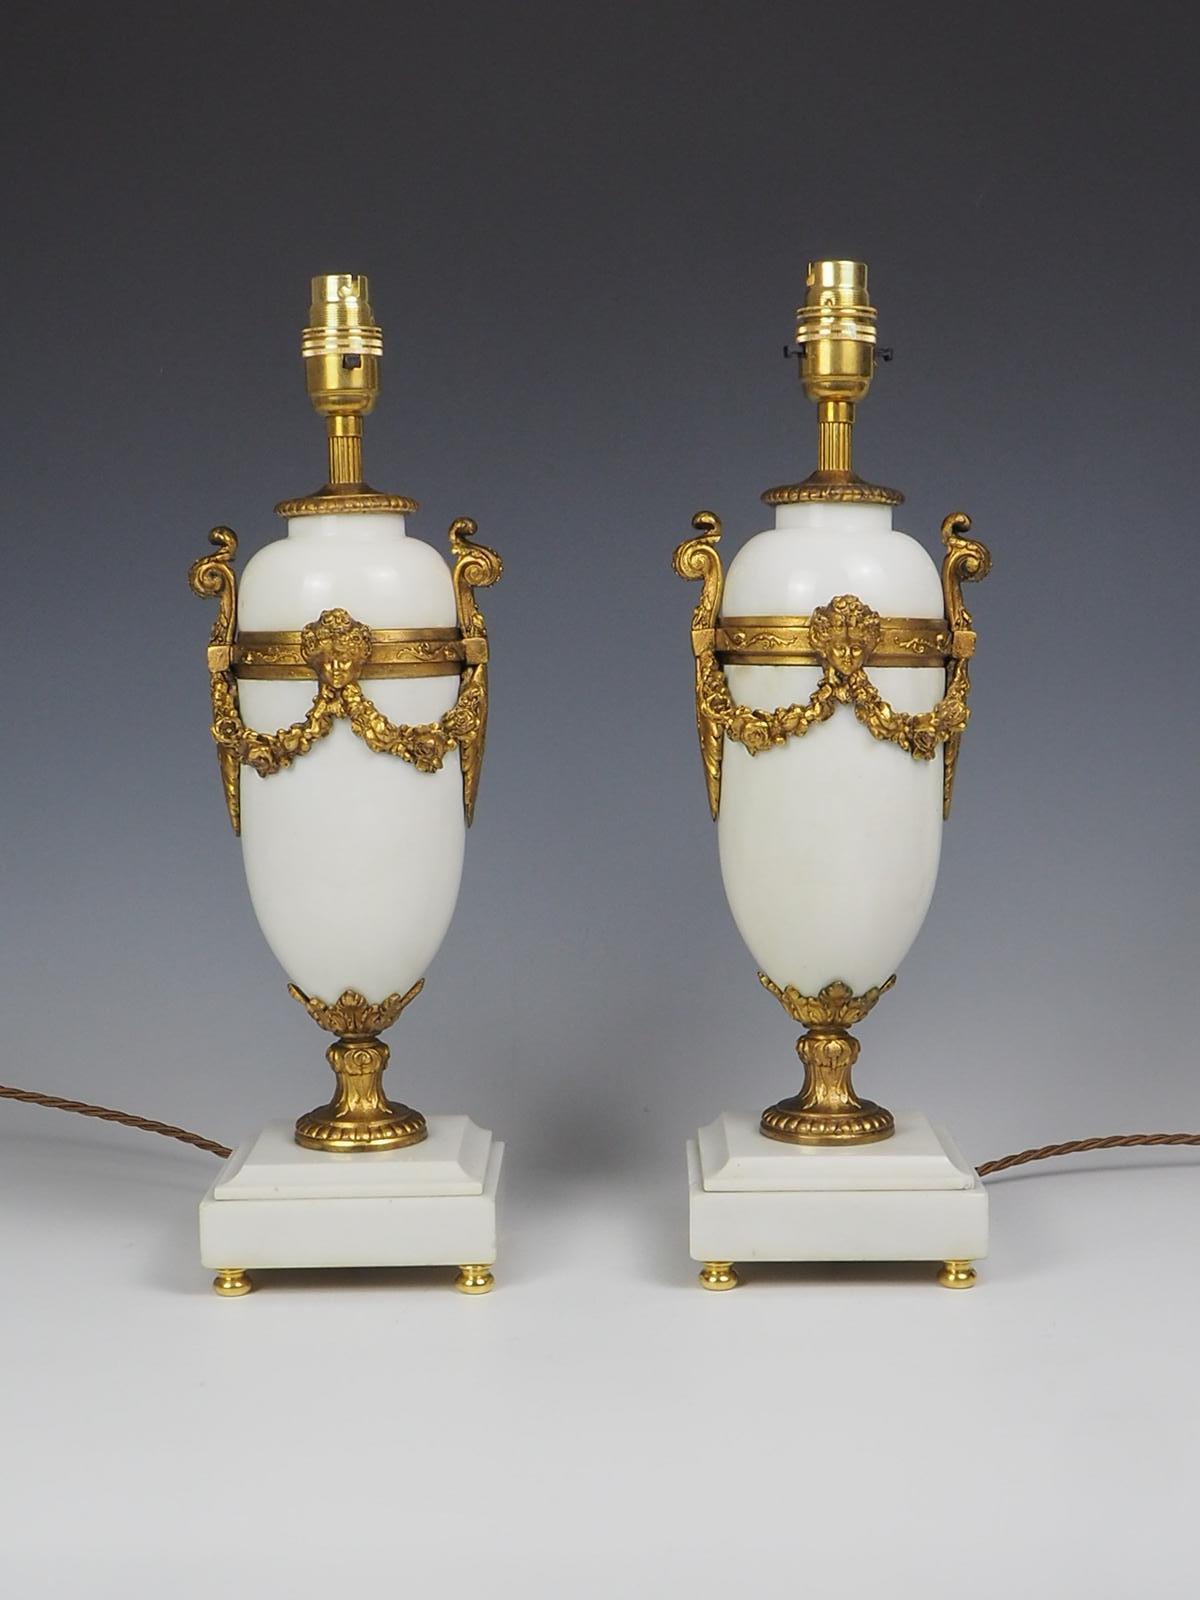 Ein exquisites Paar französischer Tischlampen aus weißem Marmor und Vergoldung aus dem 19. Jahrhundert strahlt Eleganz und Raffinesse aus. Der quadratische weiße Marmorsockel mit flacher Rückseite bietet eine stabile Basis für die Mantelregallampen